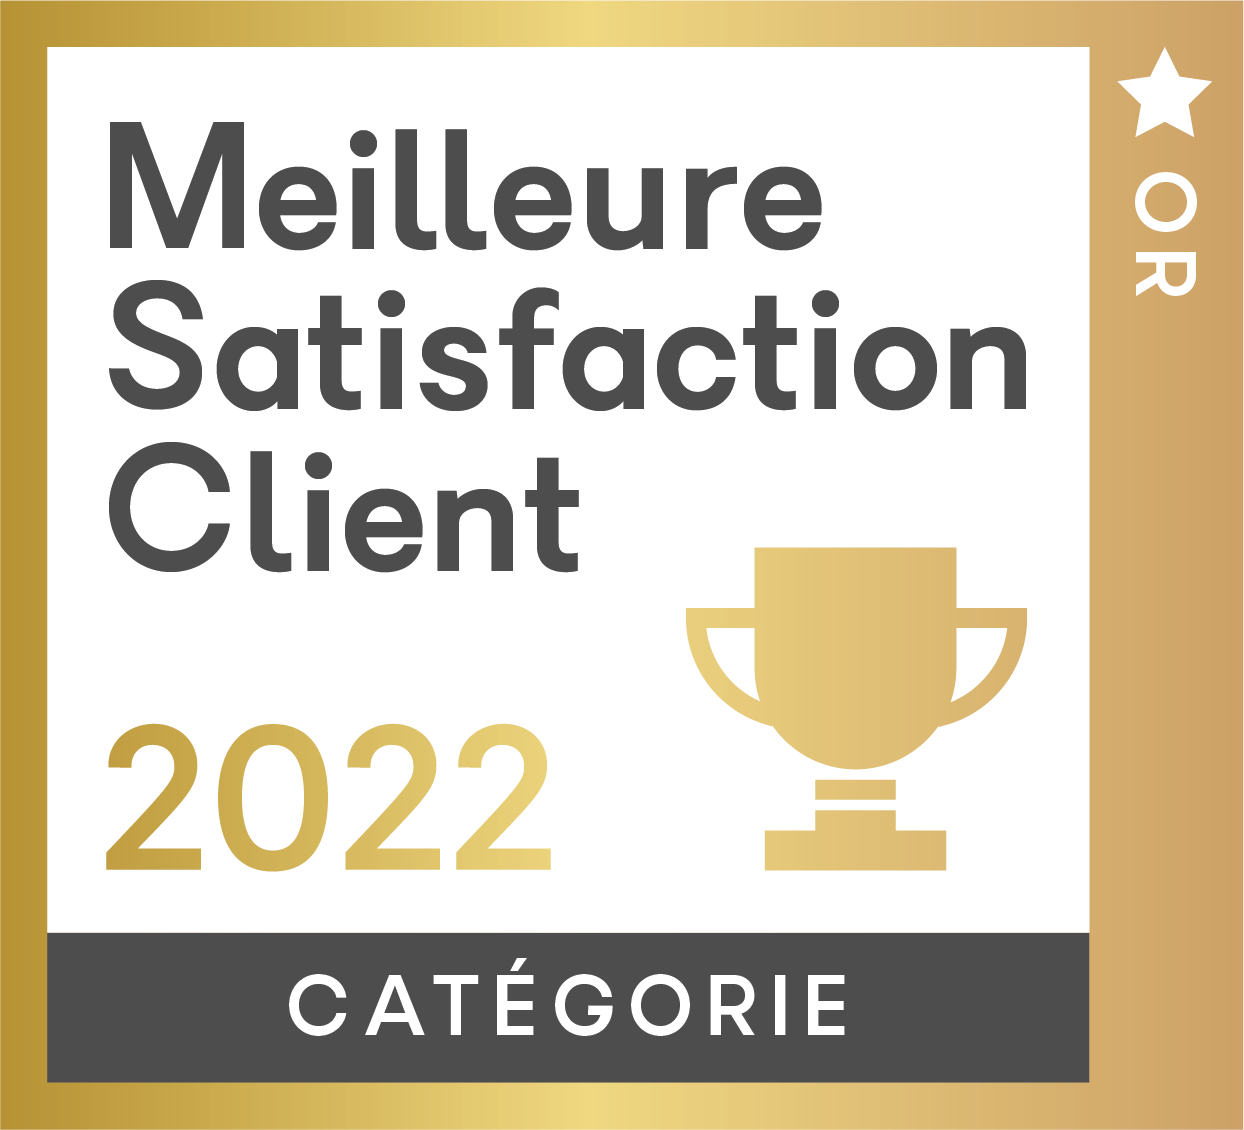 Or_Cat_Meilleure_Satisfaction_Client_2022